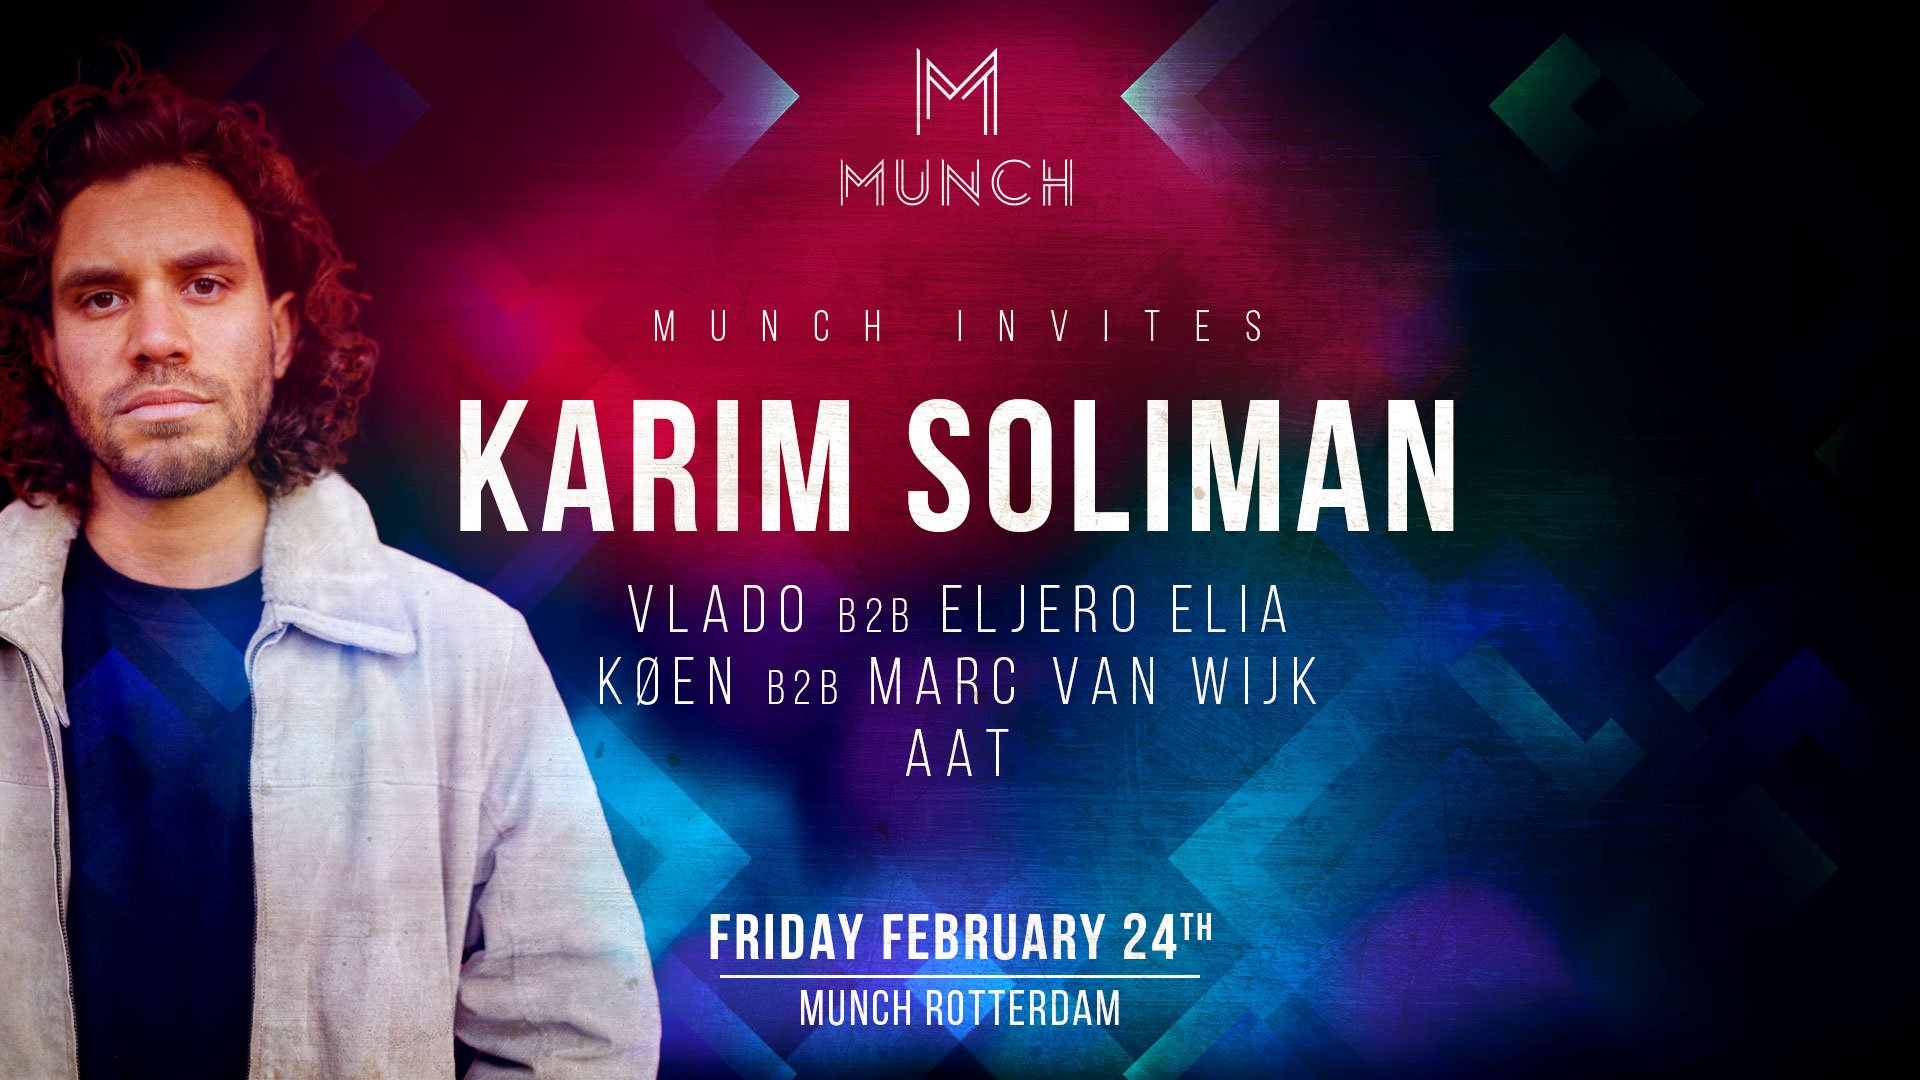 Munch invites Karim Soliman & Friends